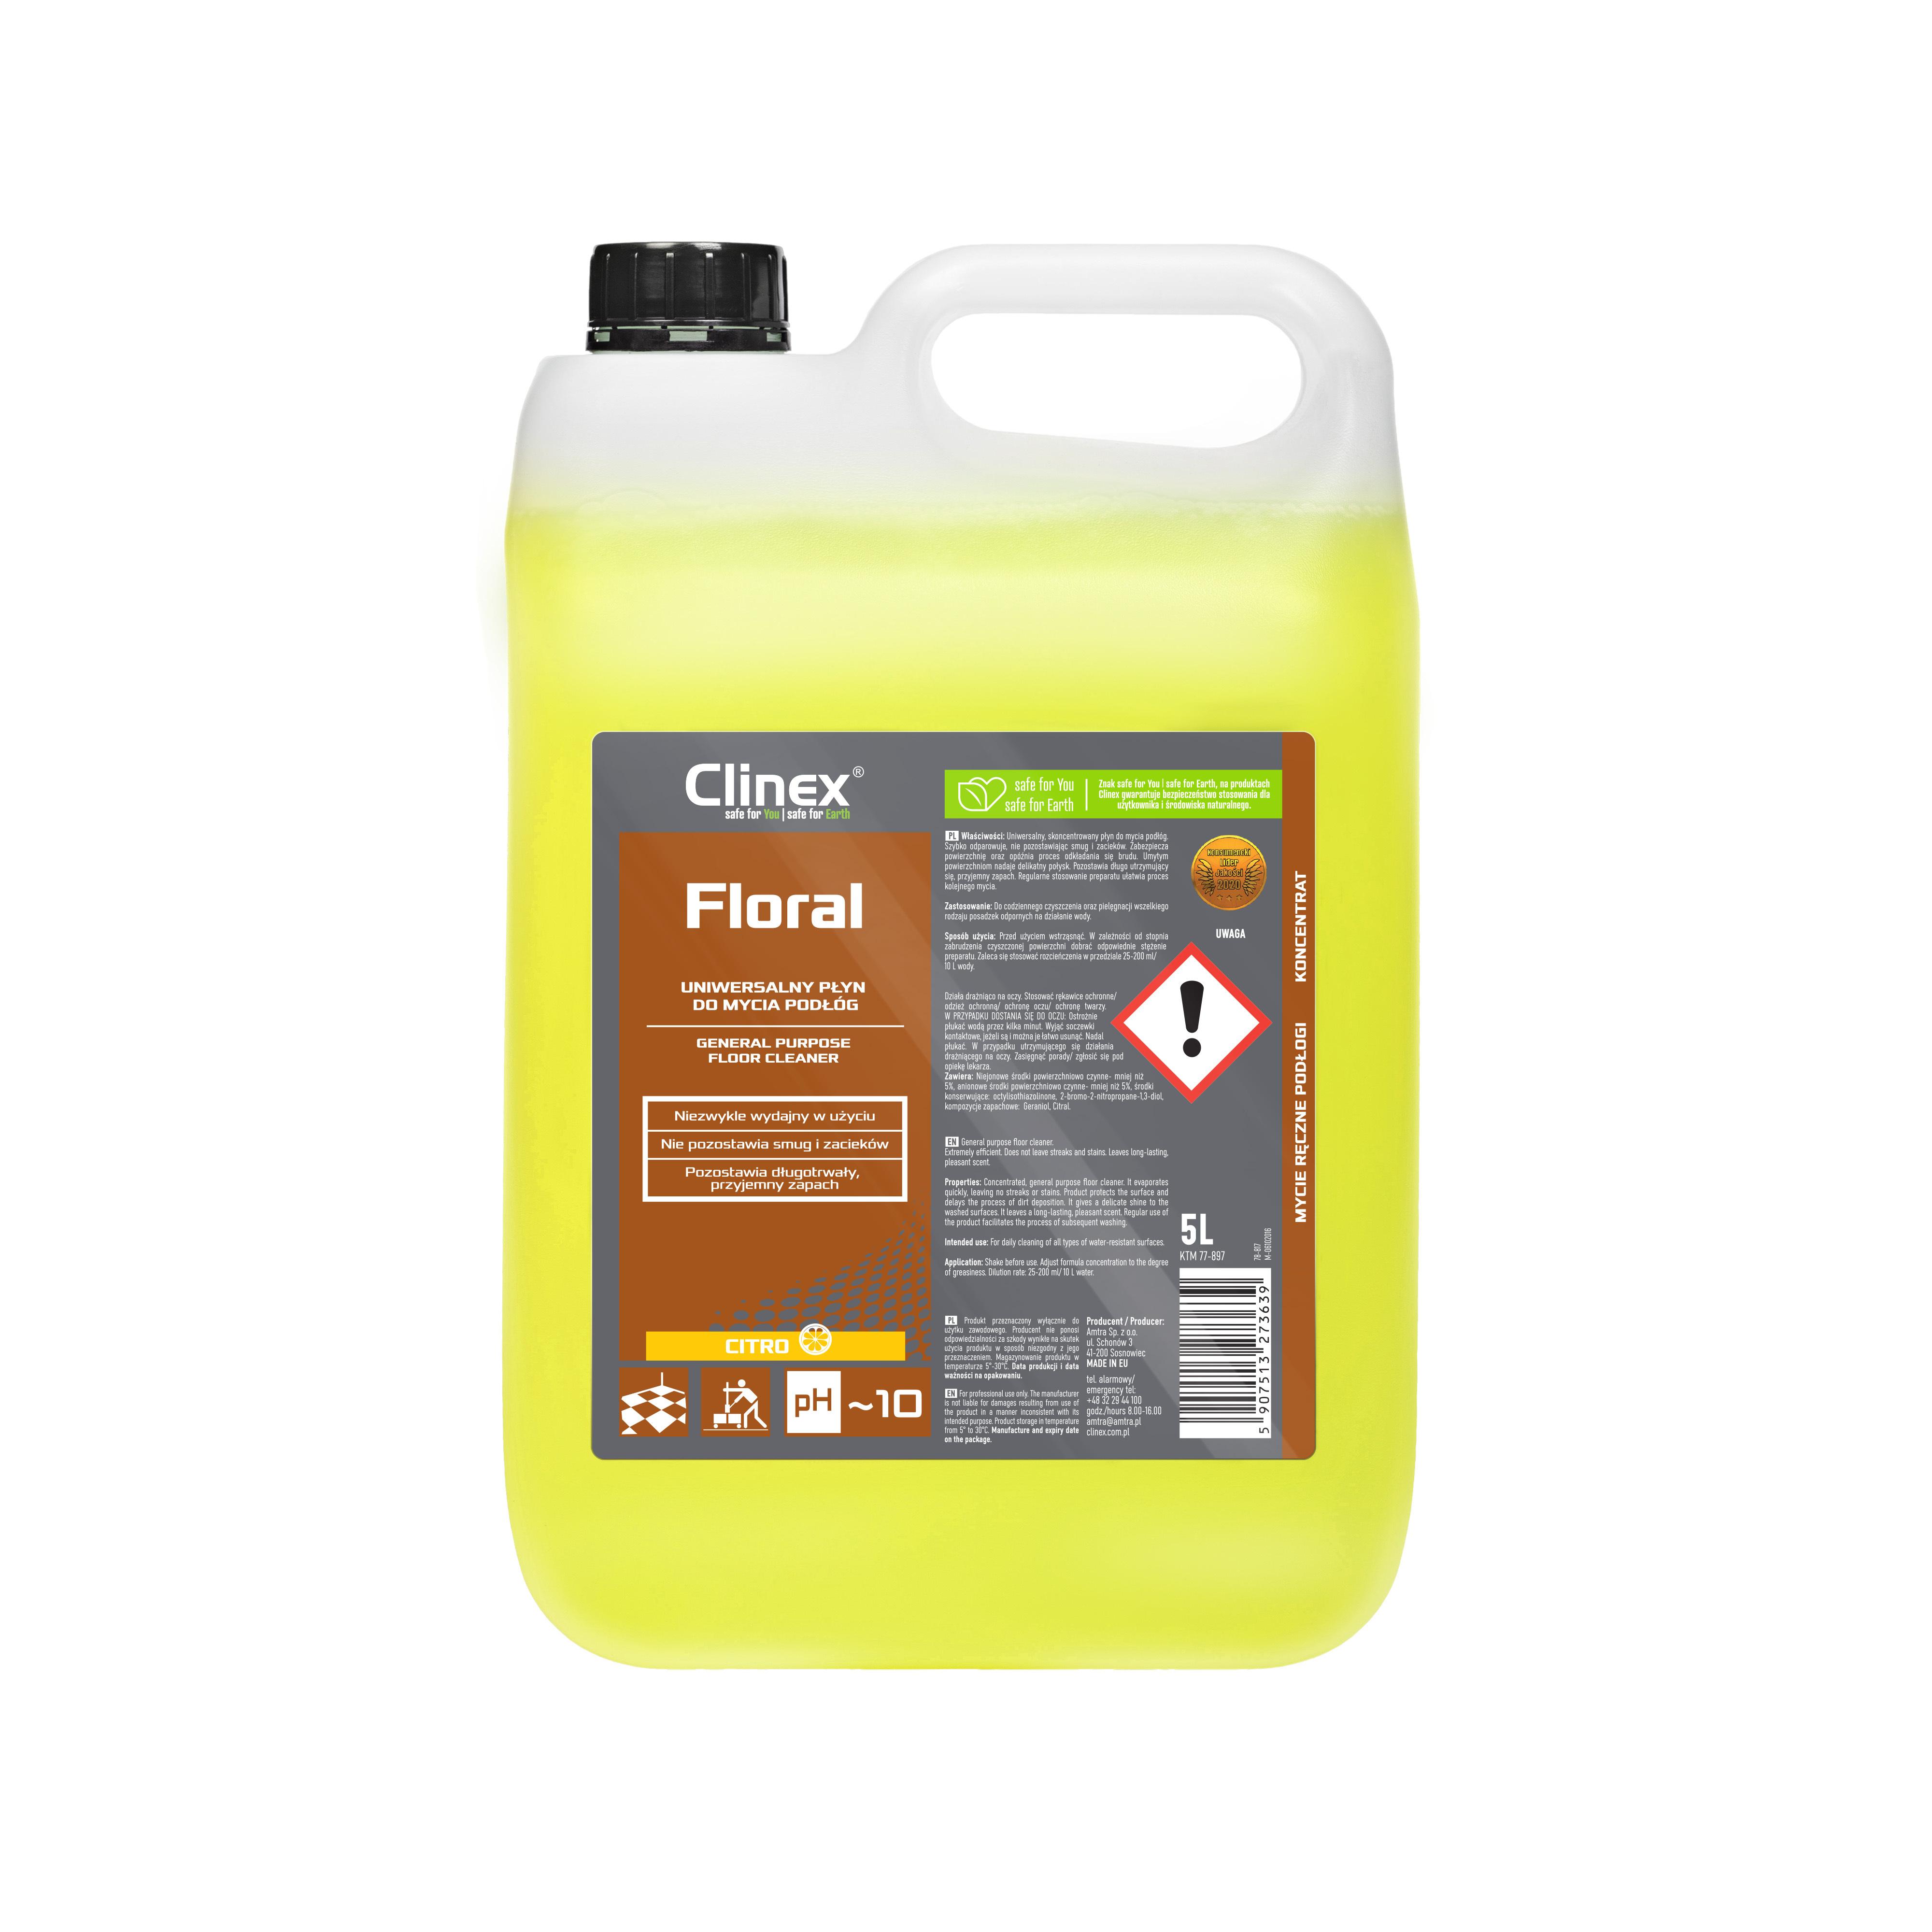 Clinex Floral Citro 5 liters